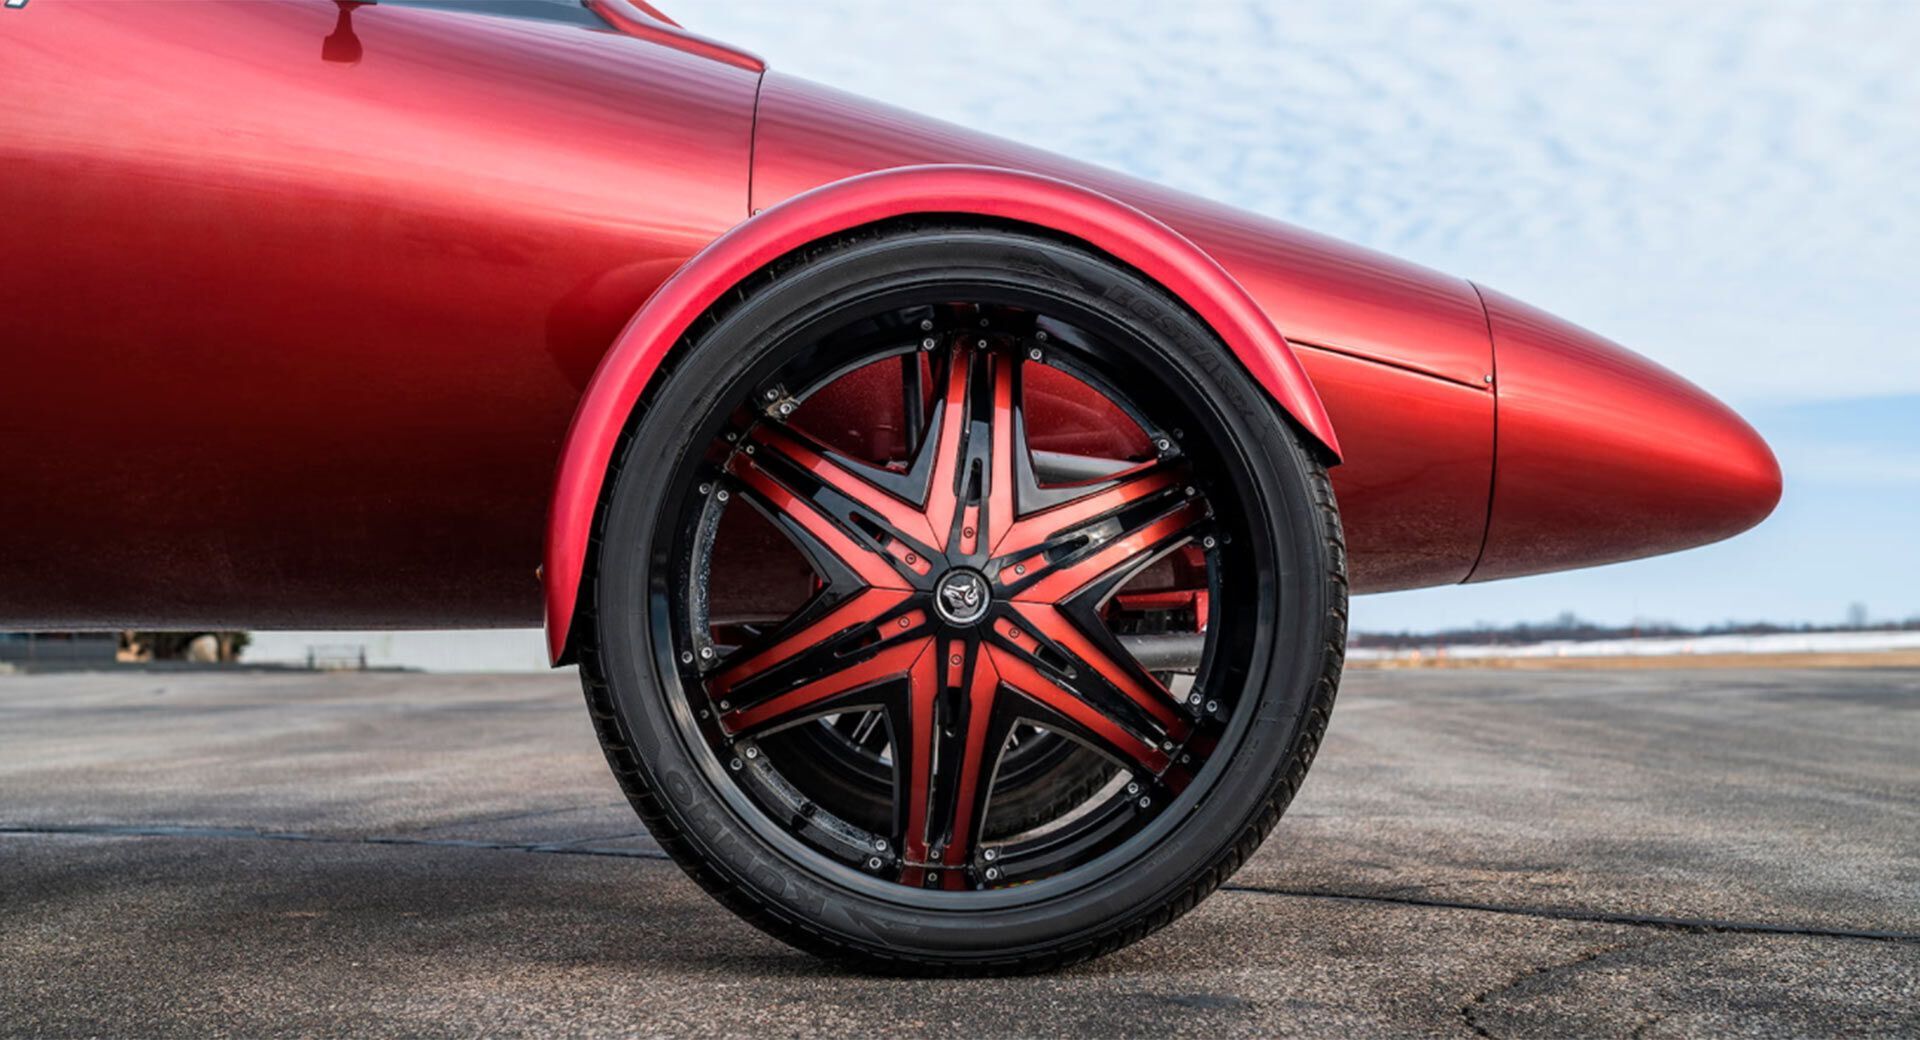 28-дюймовые колесные диски имеют оригинальный дизайн